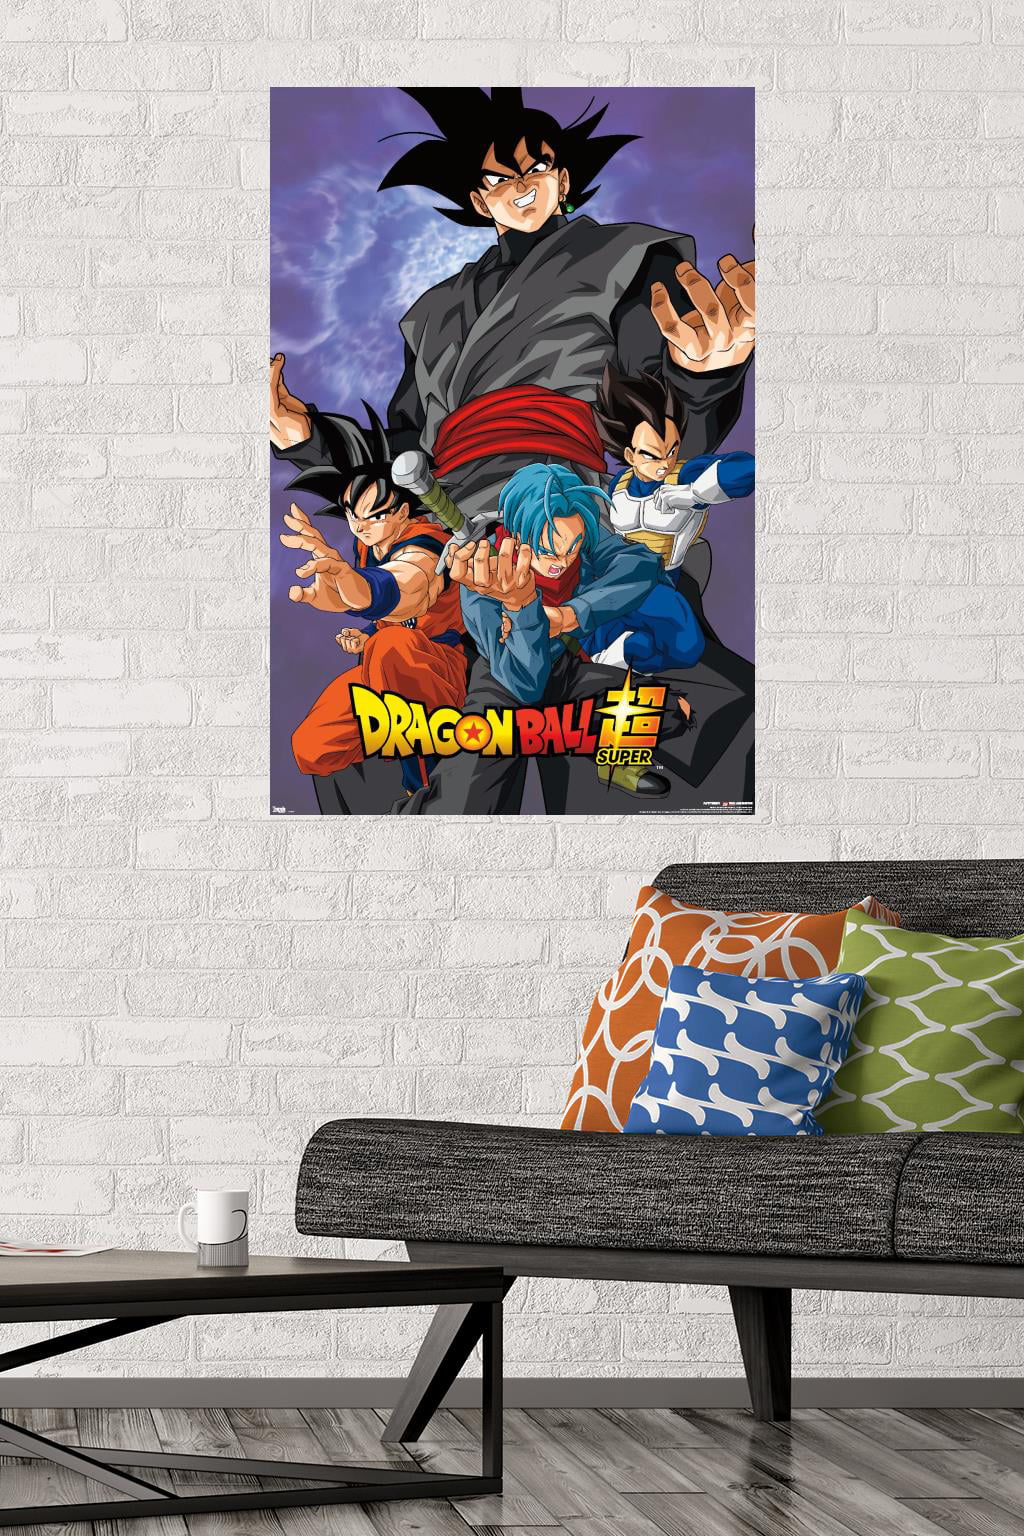 Photo Wallpaper Goku, dragon ball z super Wall Mural Children's, Kids Room